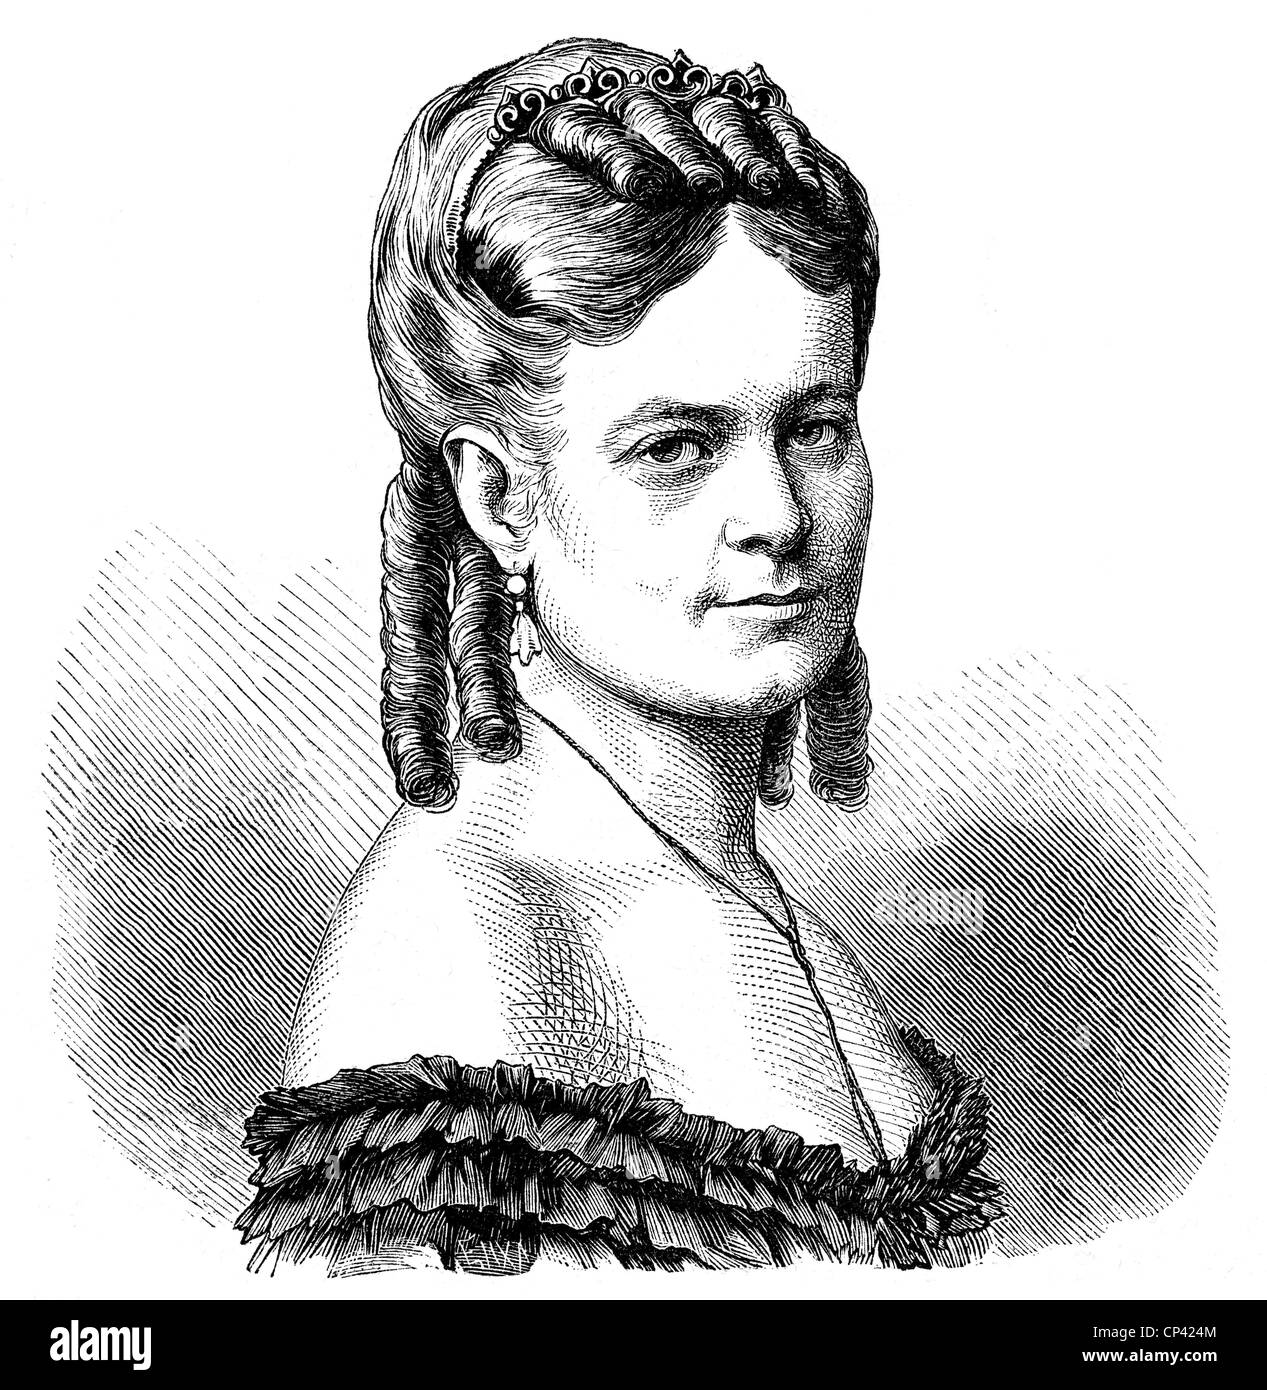 Ebergenyi von Telekes, Julie Malwine Gabriele, österreichische Gifterin (vergiftete Gräfin Chorinsky), die im Jahr 1868 zu 20 Jahren Haft verurteilt wurde, starb im Jahr 1873, Porträt, ca. 1870, Stockfoto